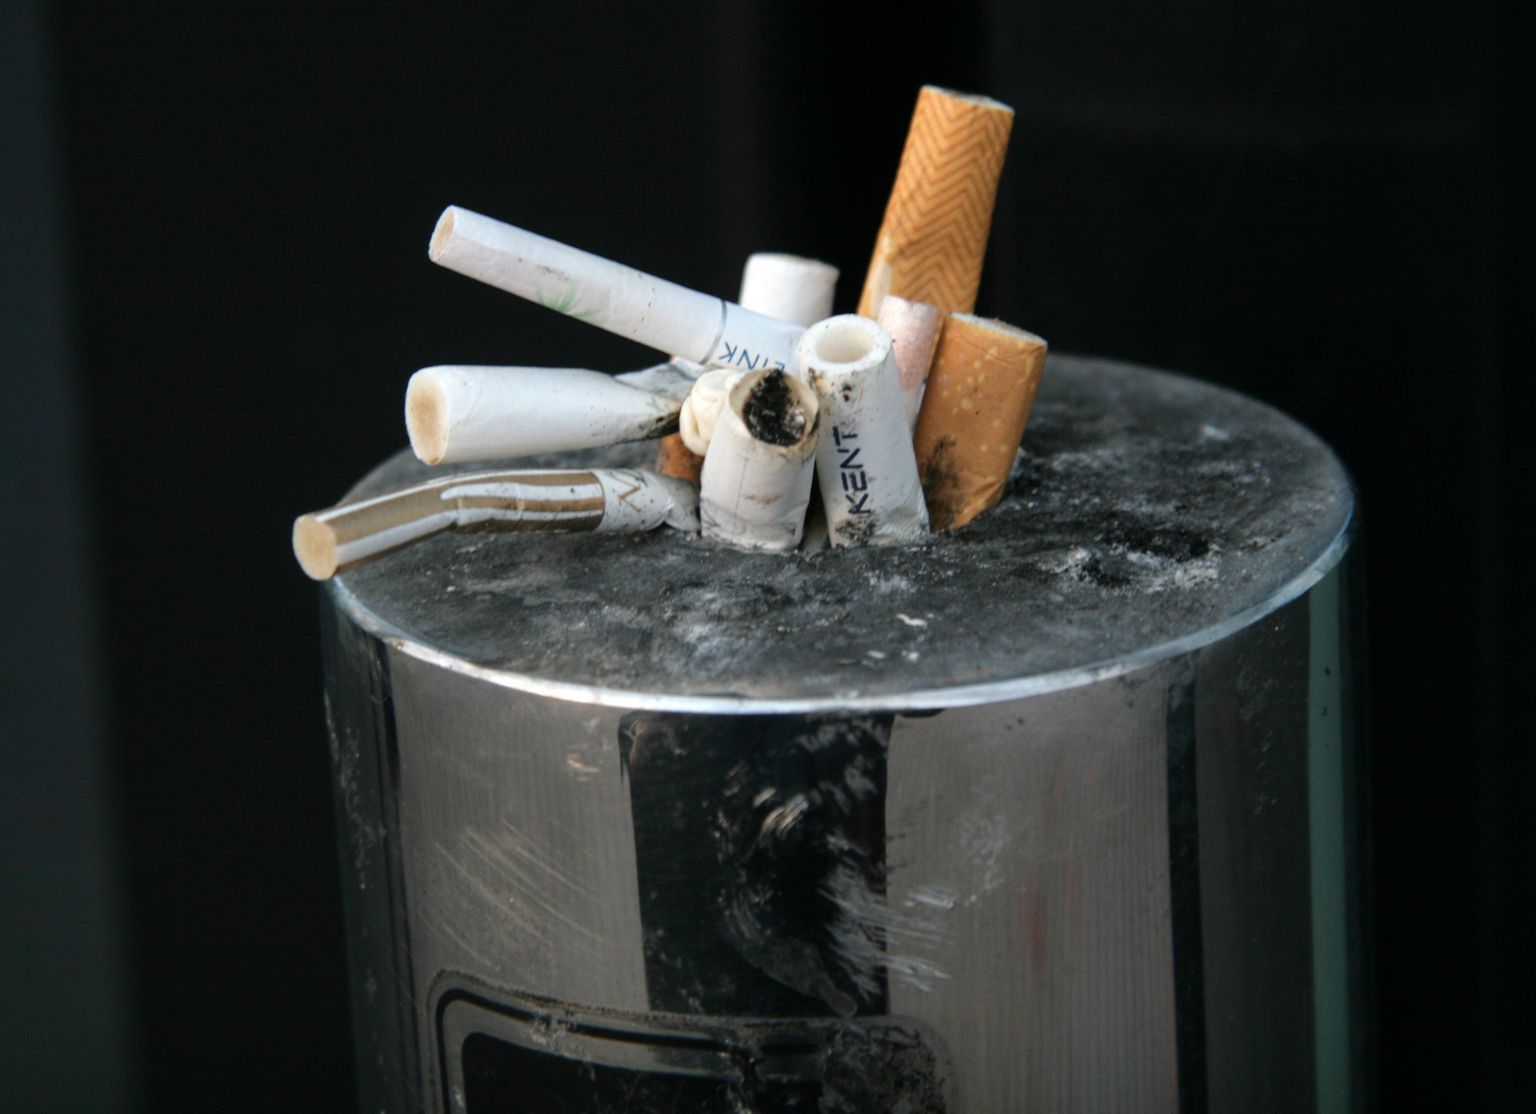 Употребление никотина и табака по-прежнему является одной из основных причин потери здоровья.